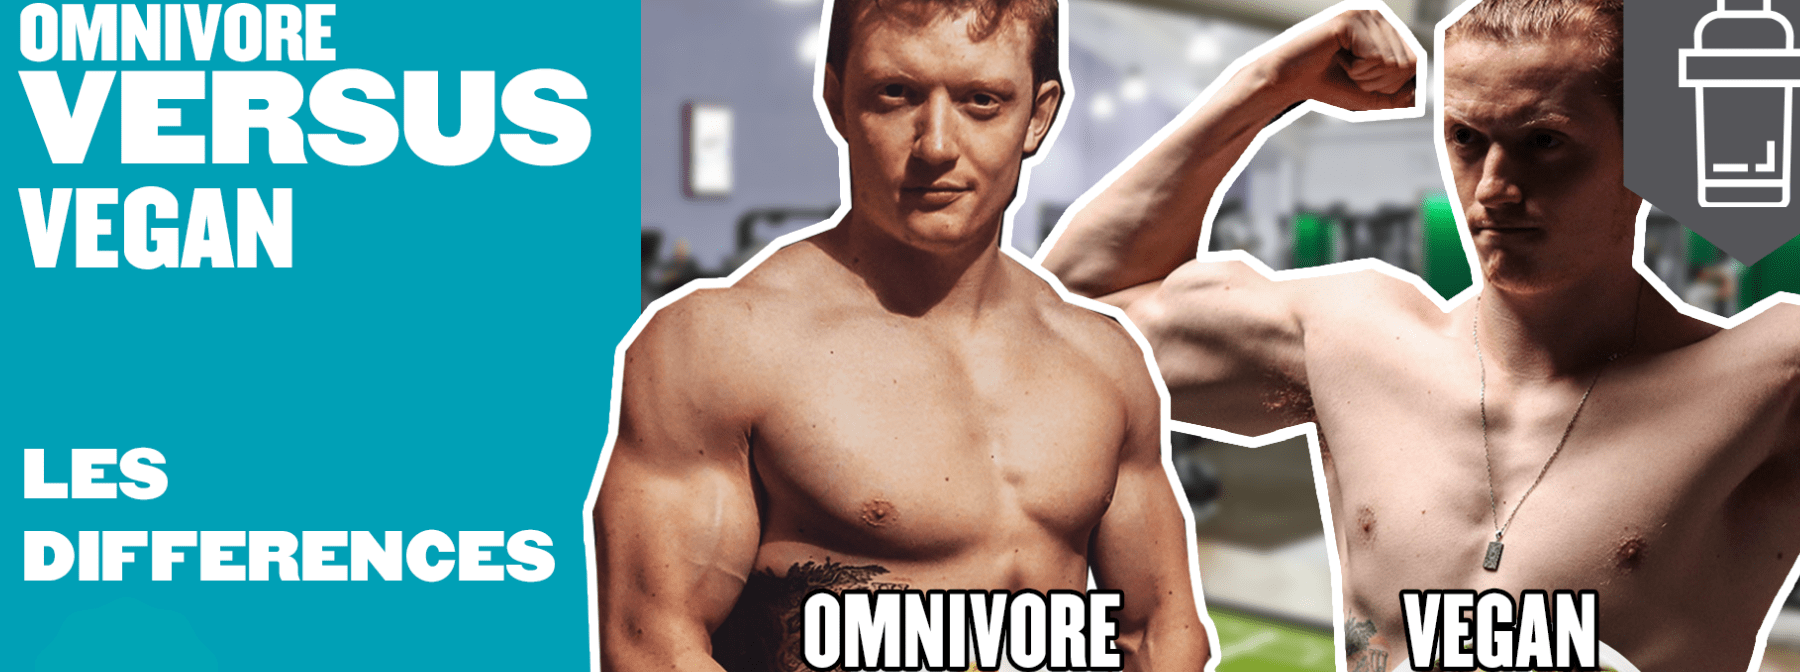 D’omnivore à sportif vegan – Les différences entre le régime végétalien et omnivore